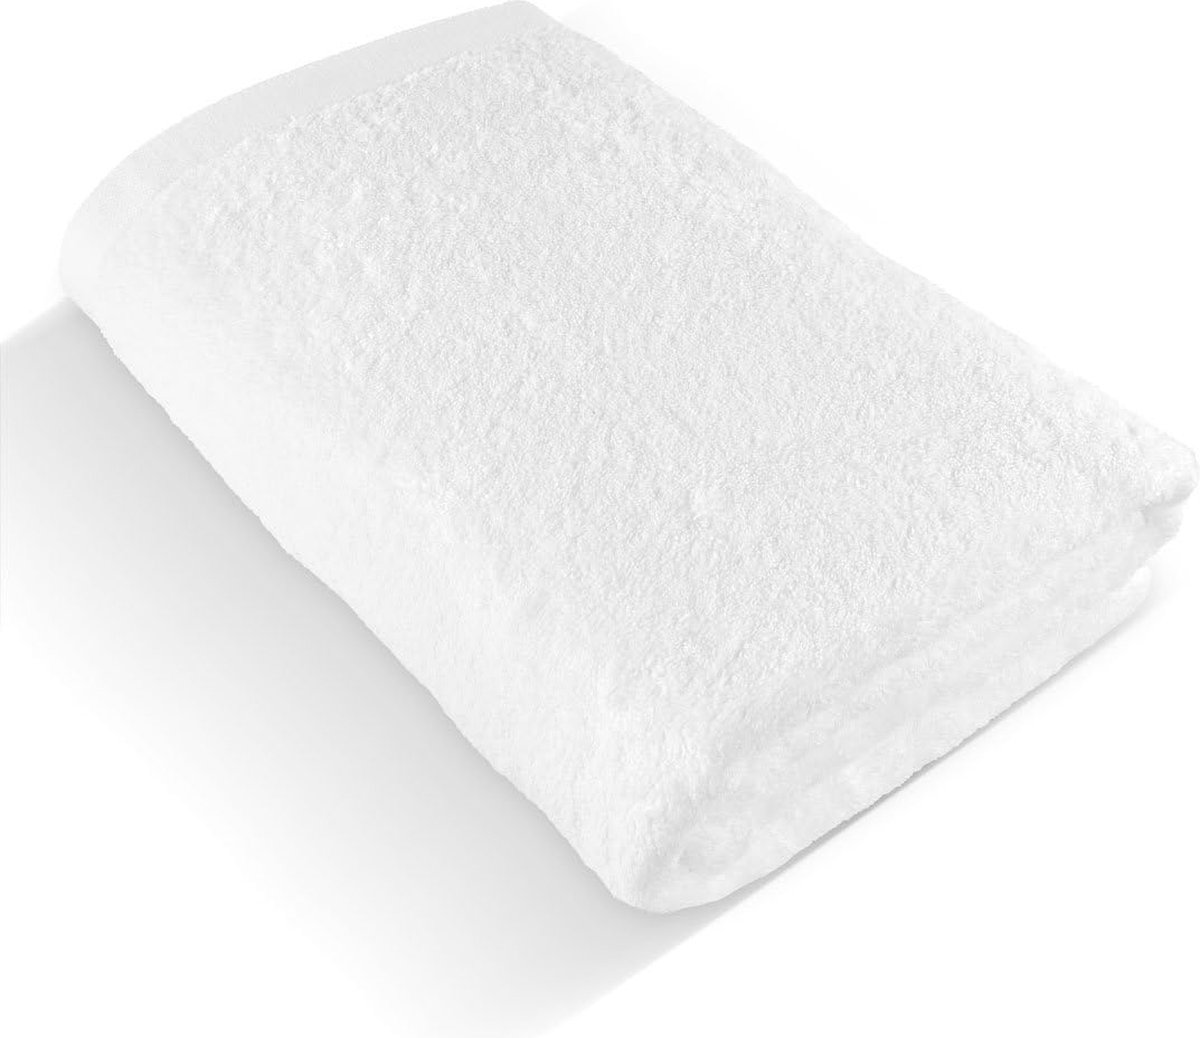 Premium badhanddoek 100 x 150 cm (wit) – grote, zachte en absorberende badhanddoek van de beste kwaliteit – 100% natuurlijk katoen